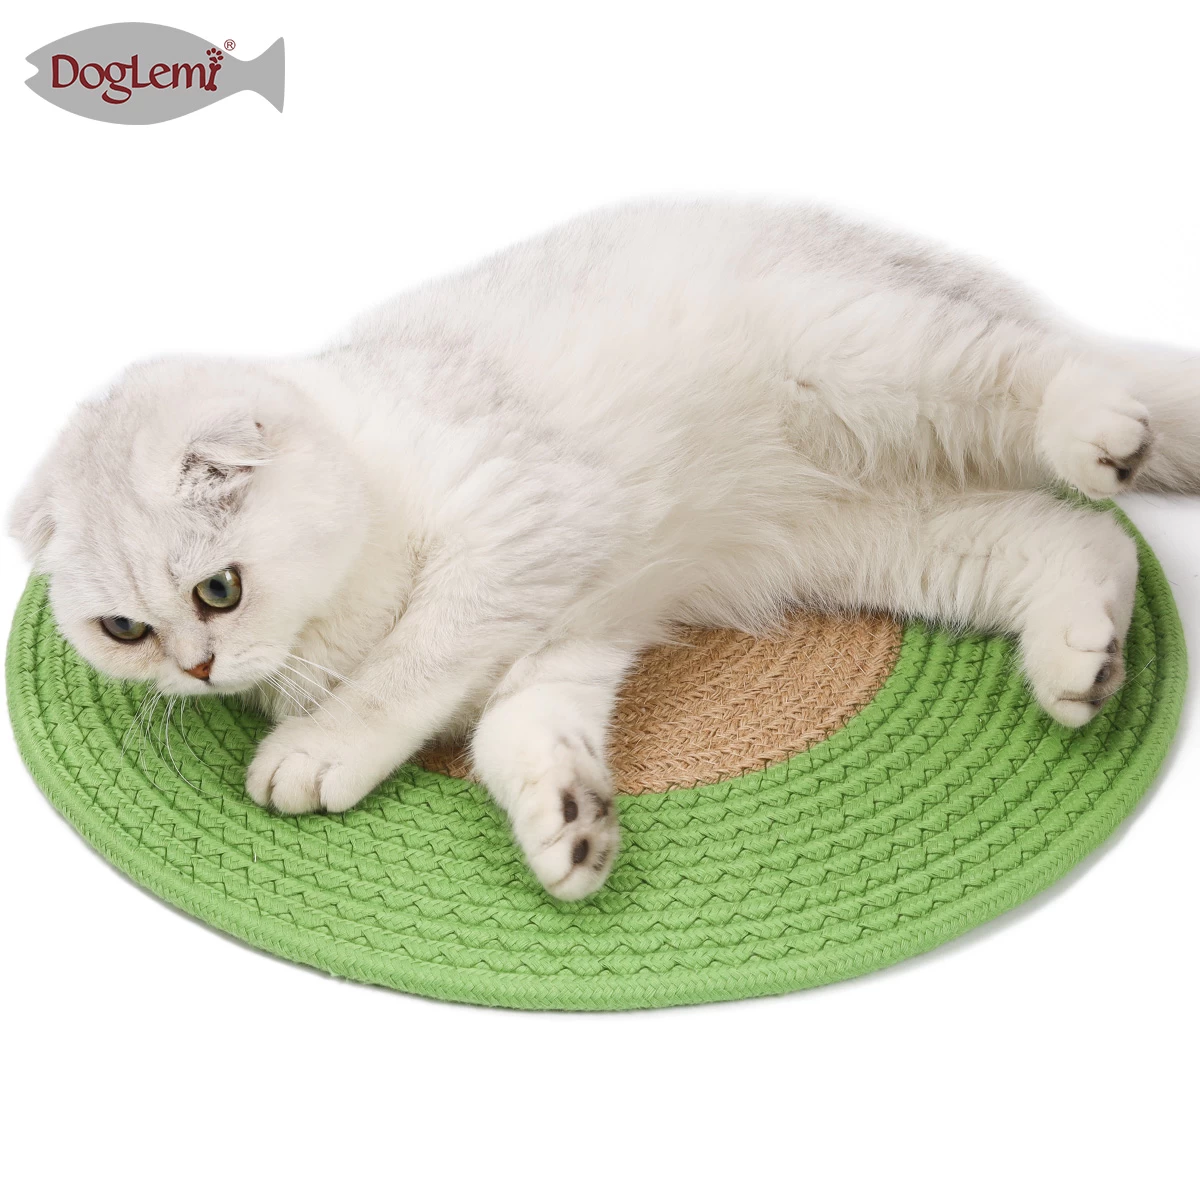 Round handmade cotton cat scratch board